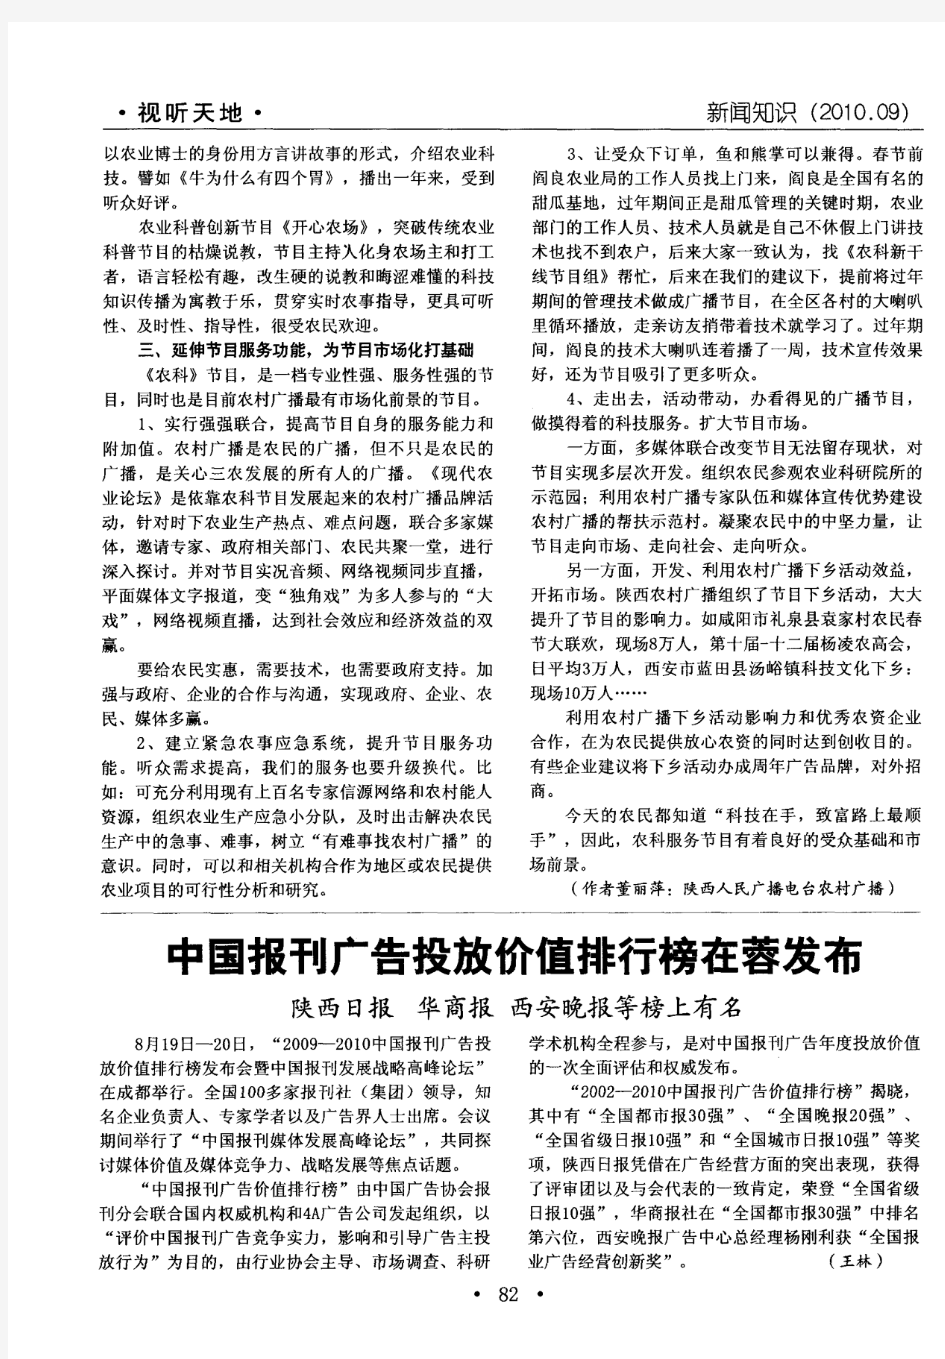 中国报刊广告投放价值排行榜在蓉发布